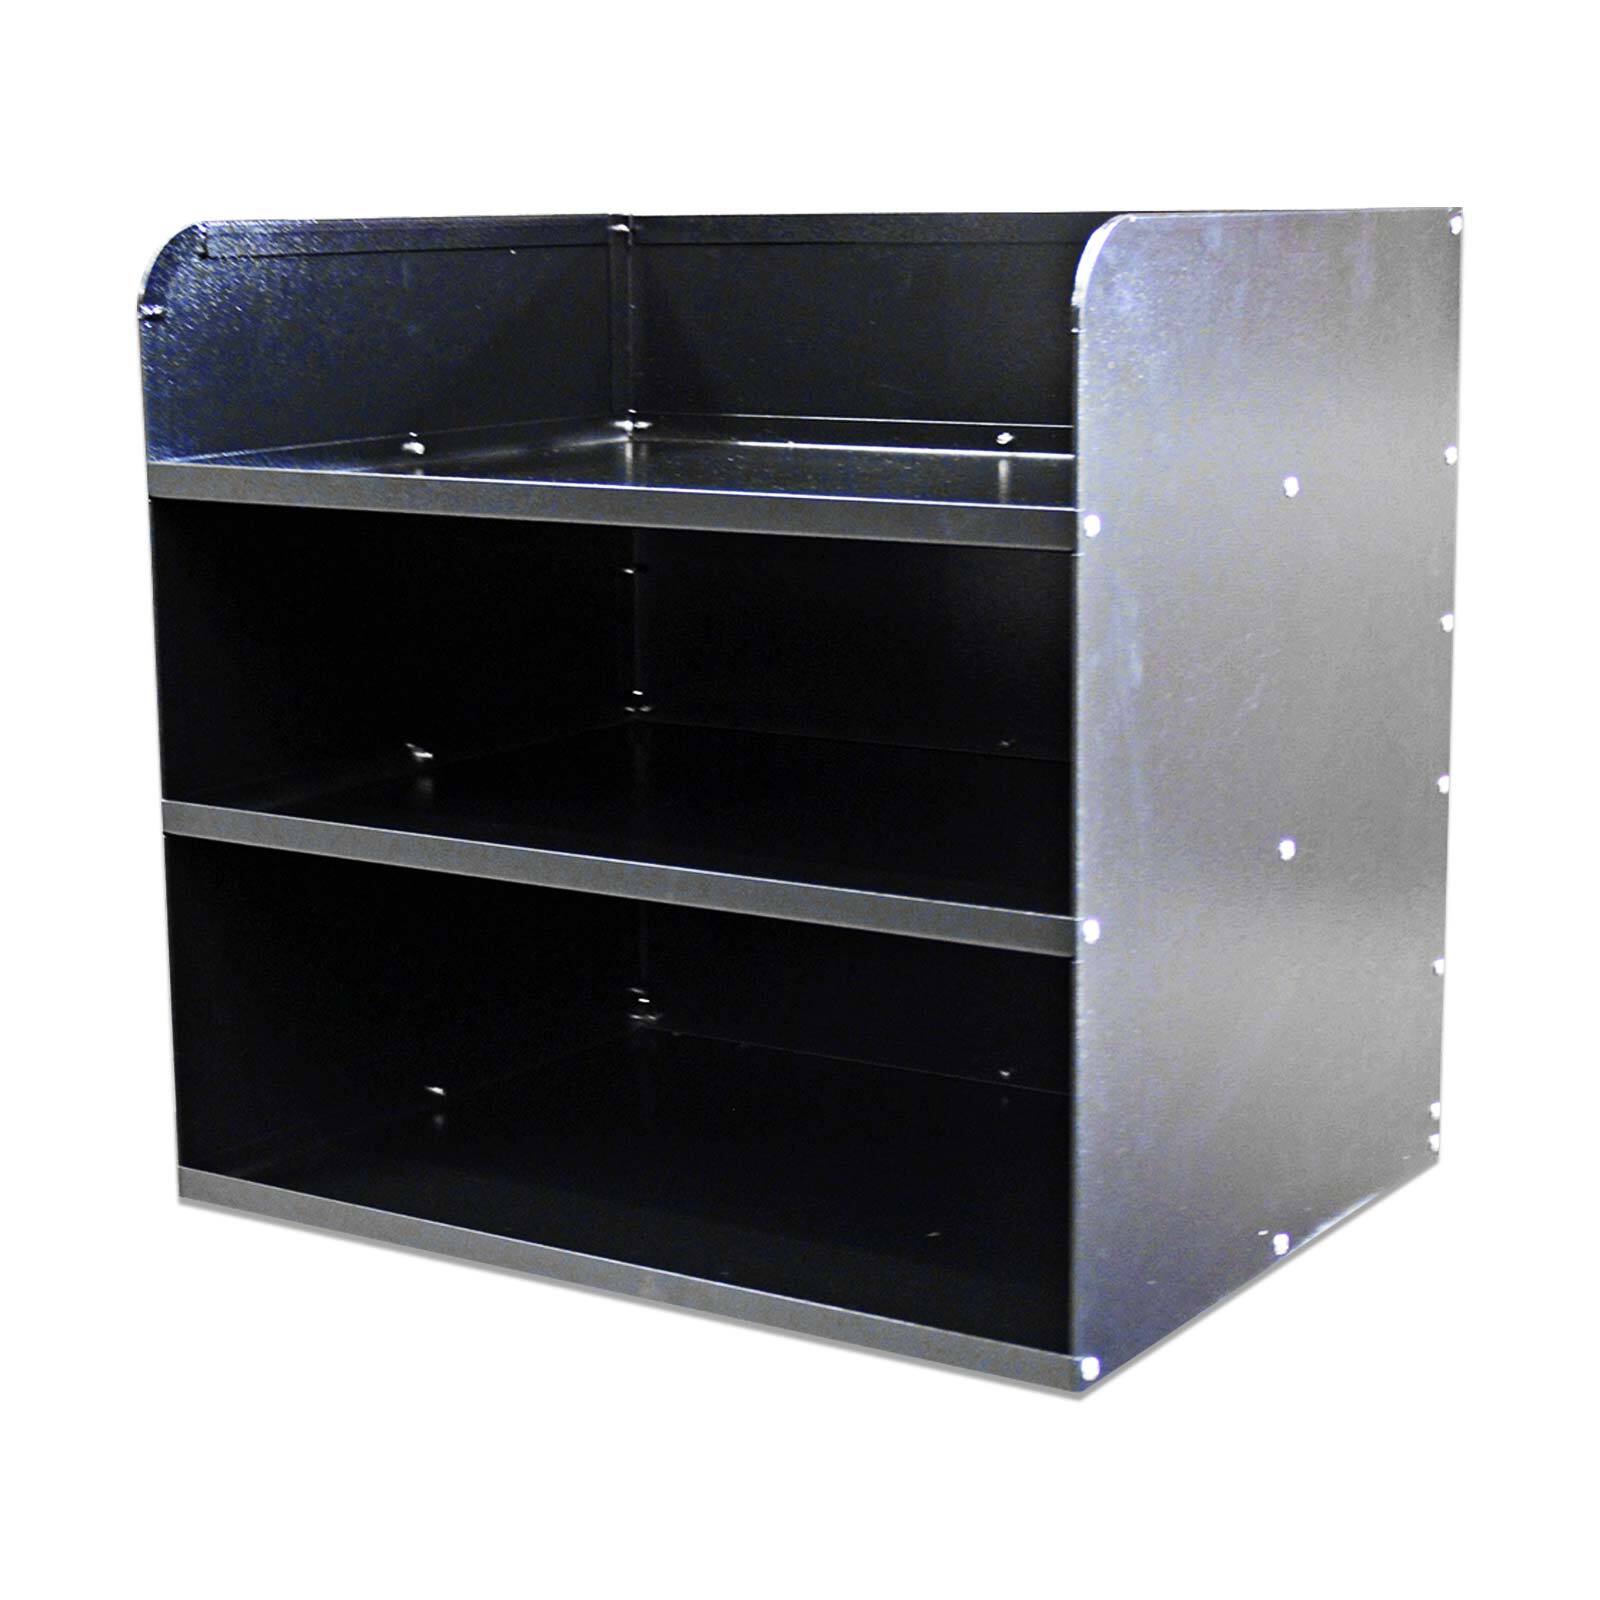 Aluminium 3 Tier Shelf Unit Black